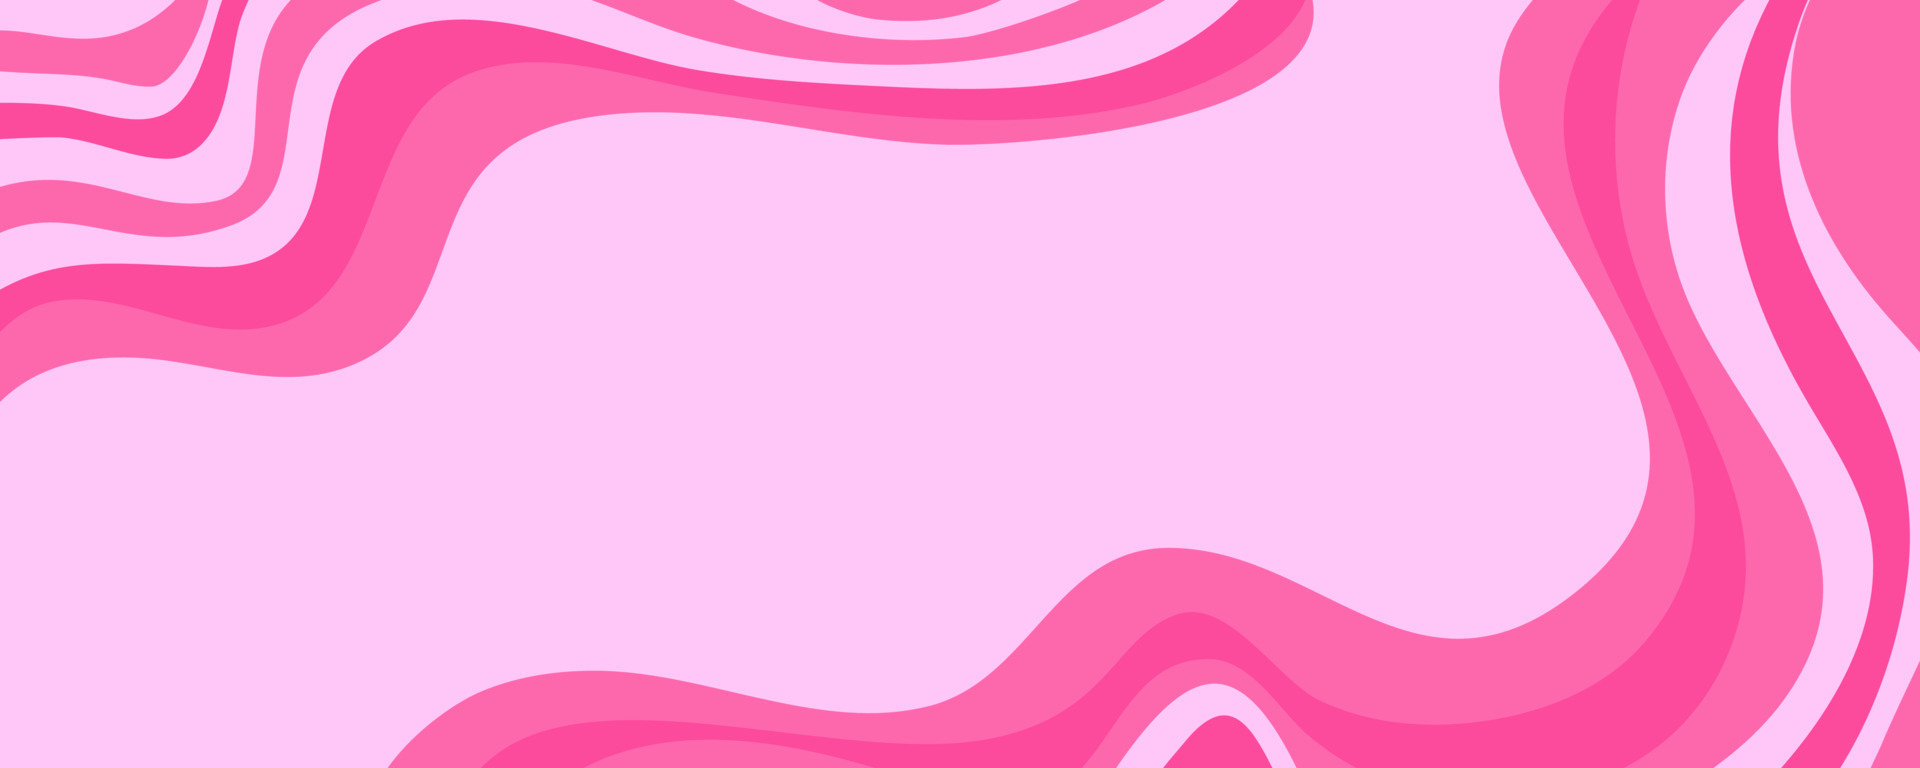 Với wallpaper hồng Y2K, bạn sẽ được trải nghiệm một phong cách thịnh hành nhưng vẫn toát lên sự riêng biệt của mình. Hãy tìm kiếm hình ảnh liên quan đến từ khóa này để khám phá thế giới của những chất liệu bóng bẩy, họa tiết độc đáo và màu sắc tươi trẻ. Bằng cách này, bạn sẽ tạo nên một không gian sống độc đáo và hấp dẫn cho riêng mình.